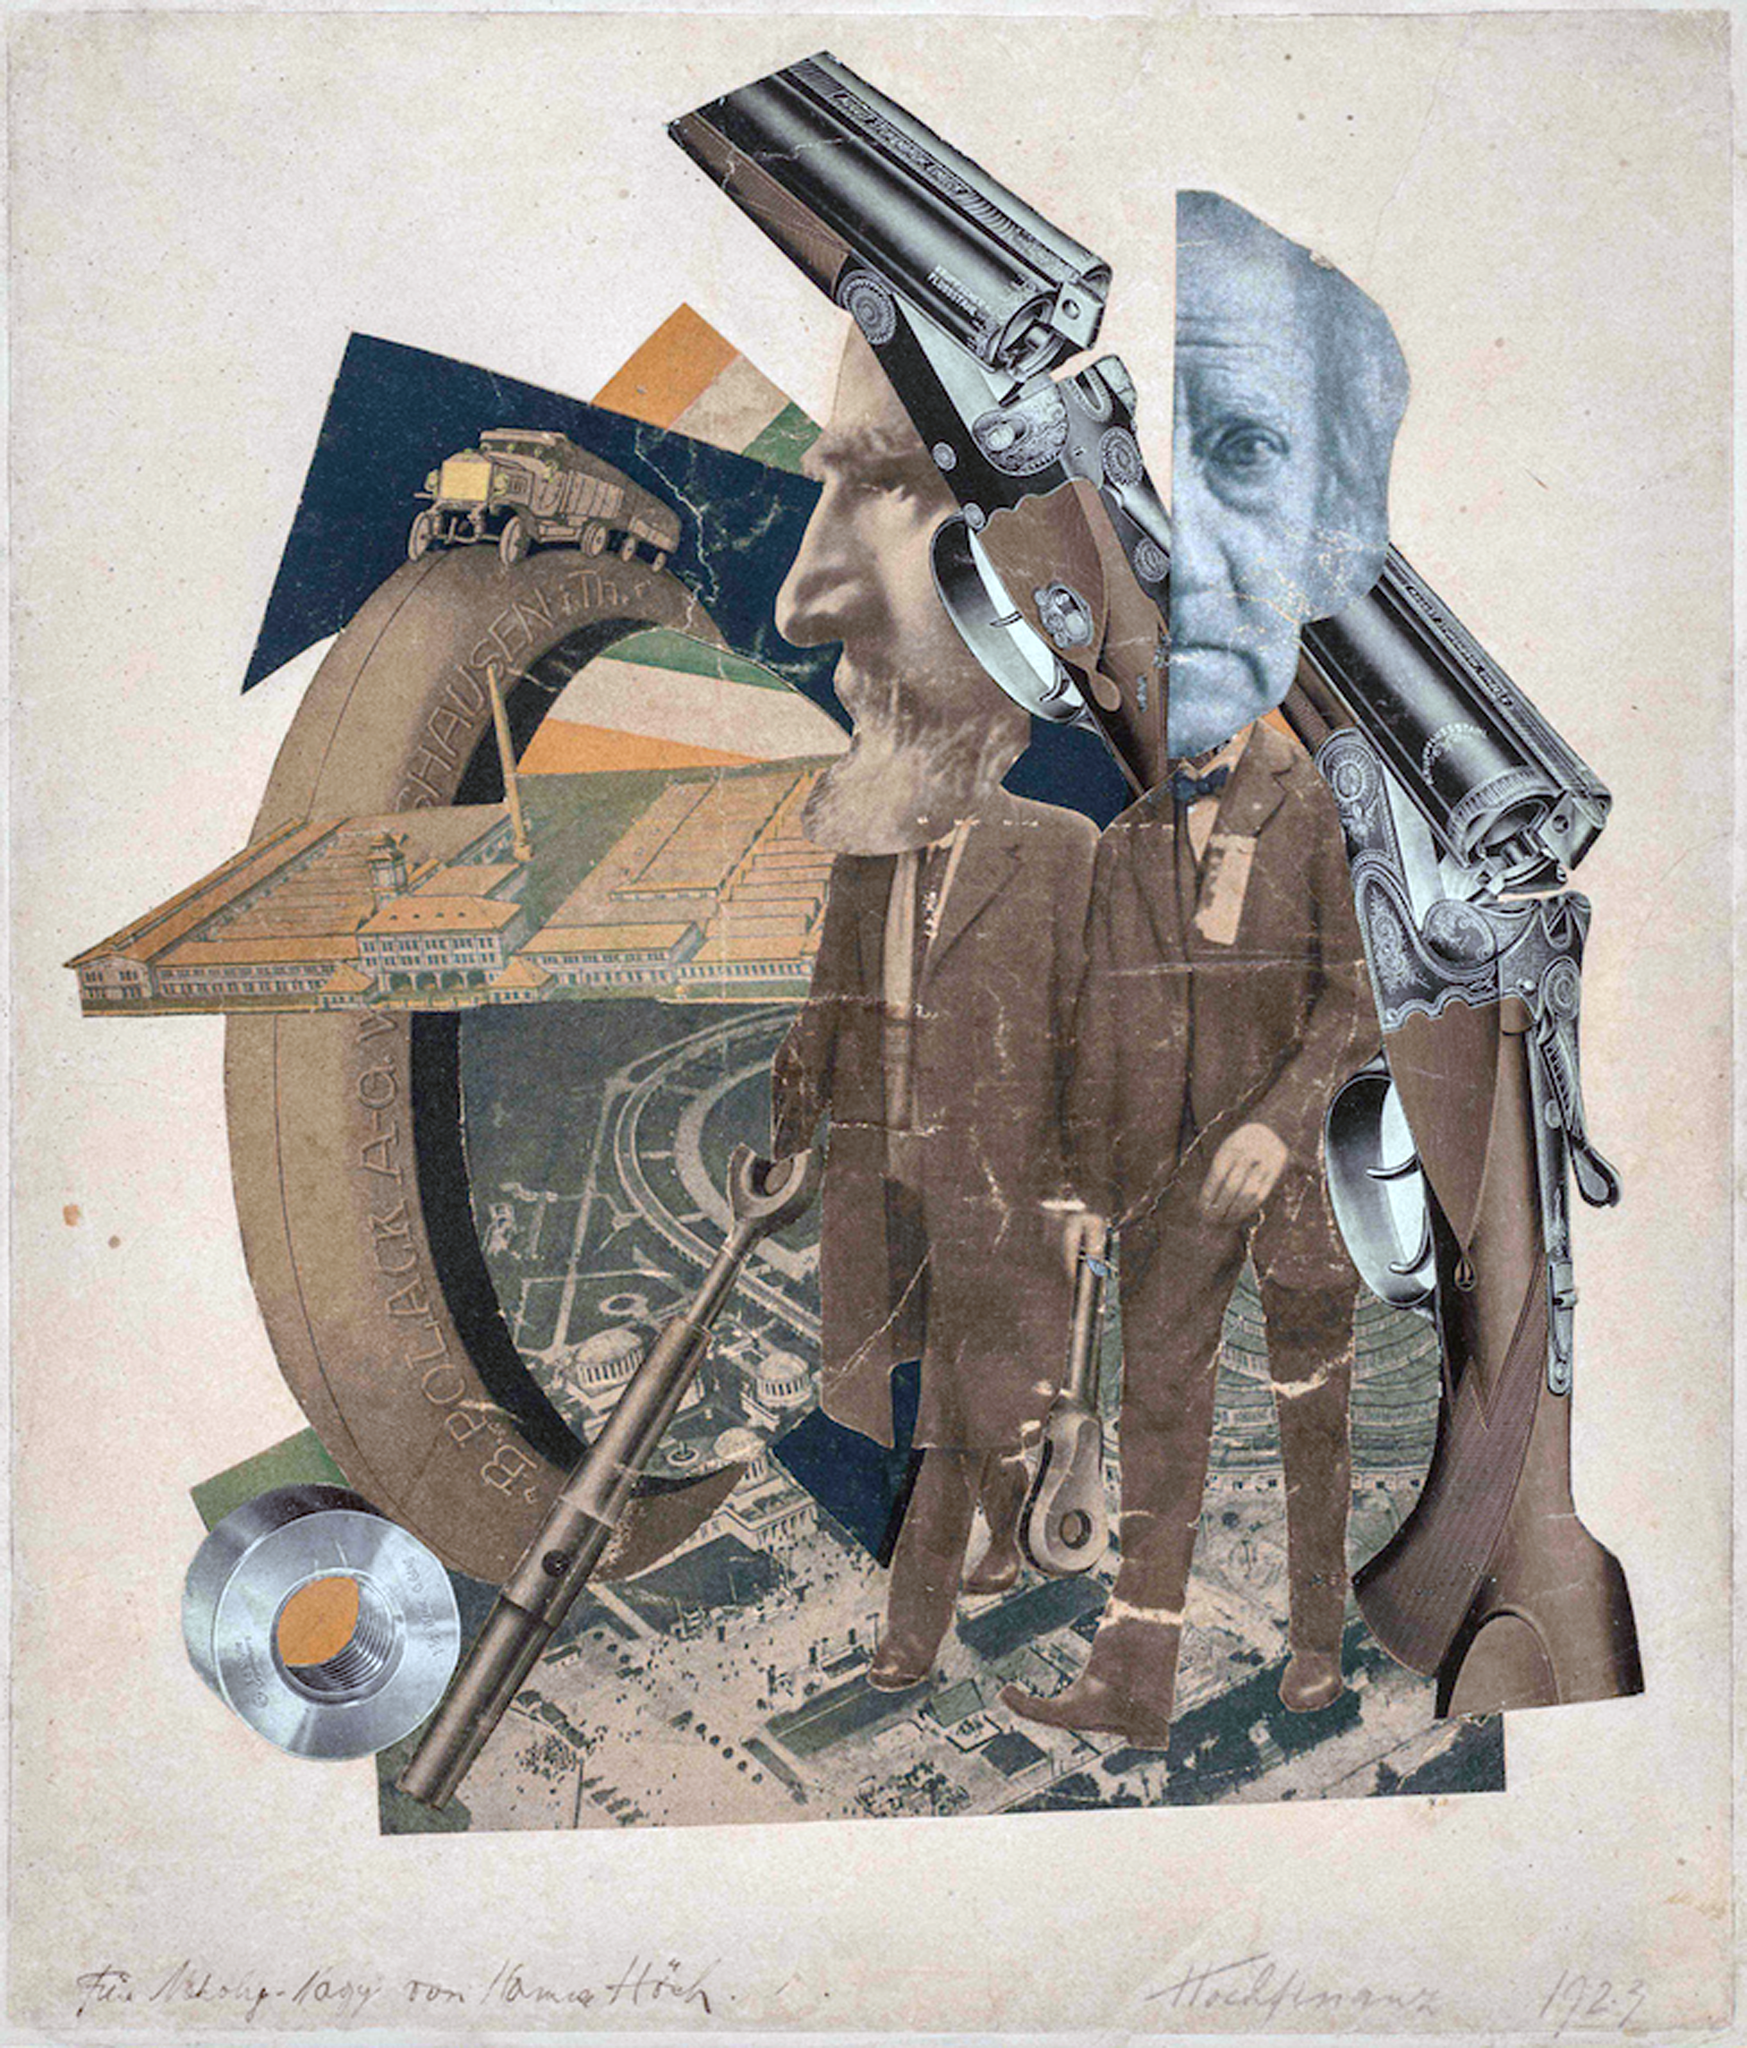 Hannah Höch, Hochfinanz (High Finance), 1923, collage, 36 x 31 cm (Galerie Berinson, Berlín)